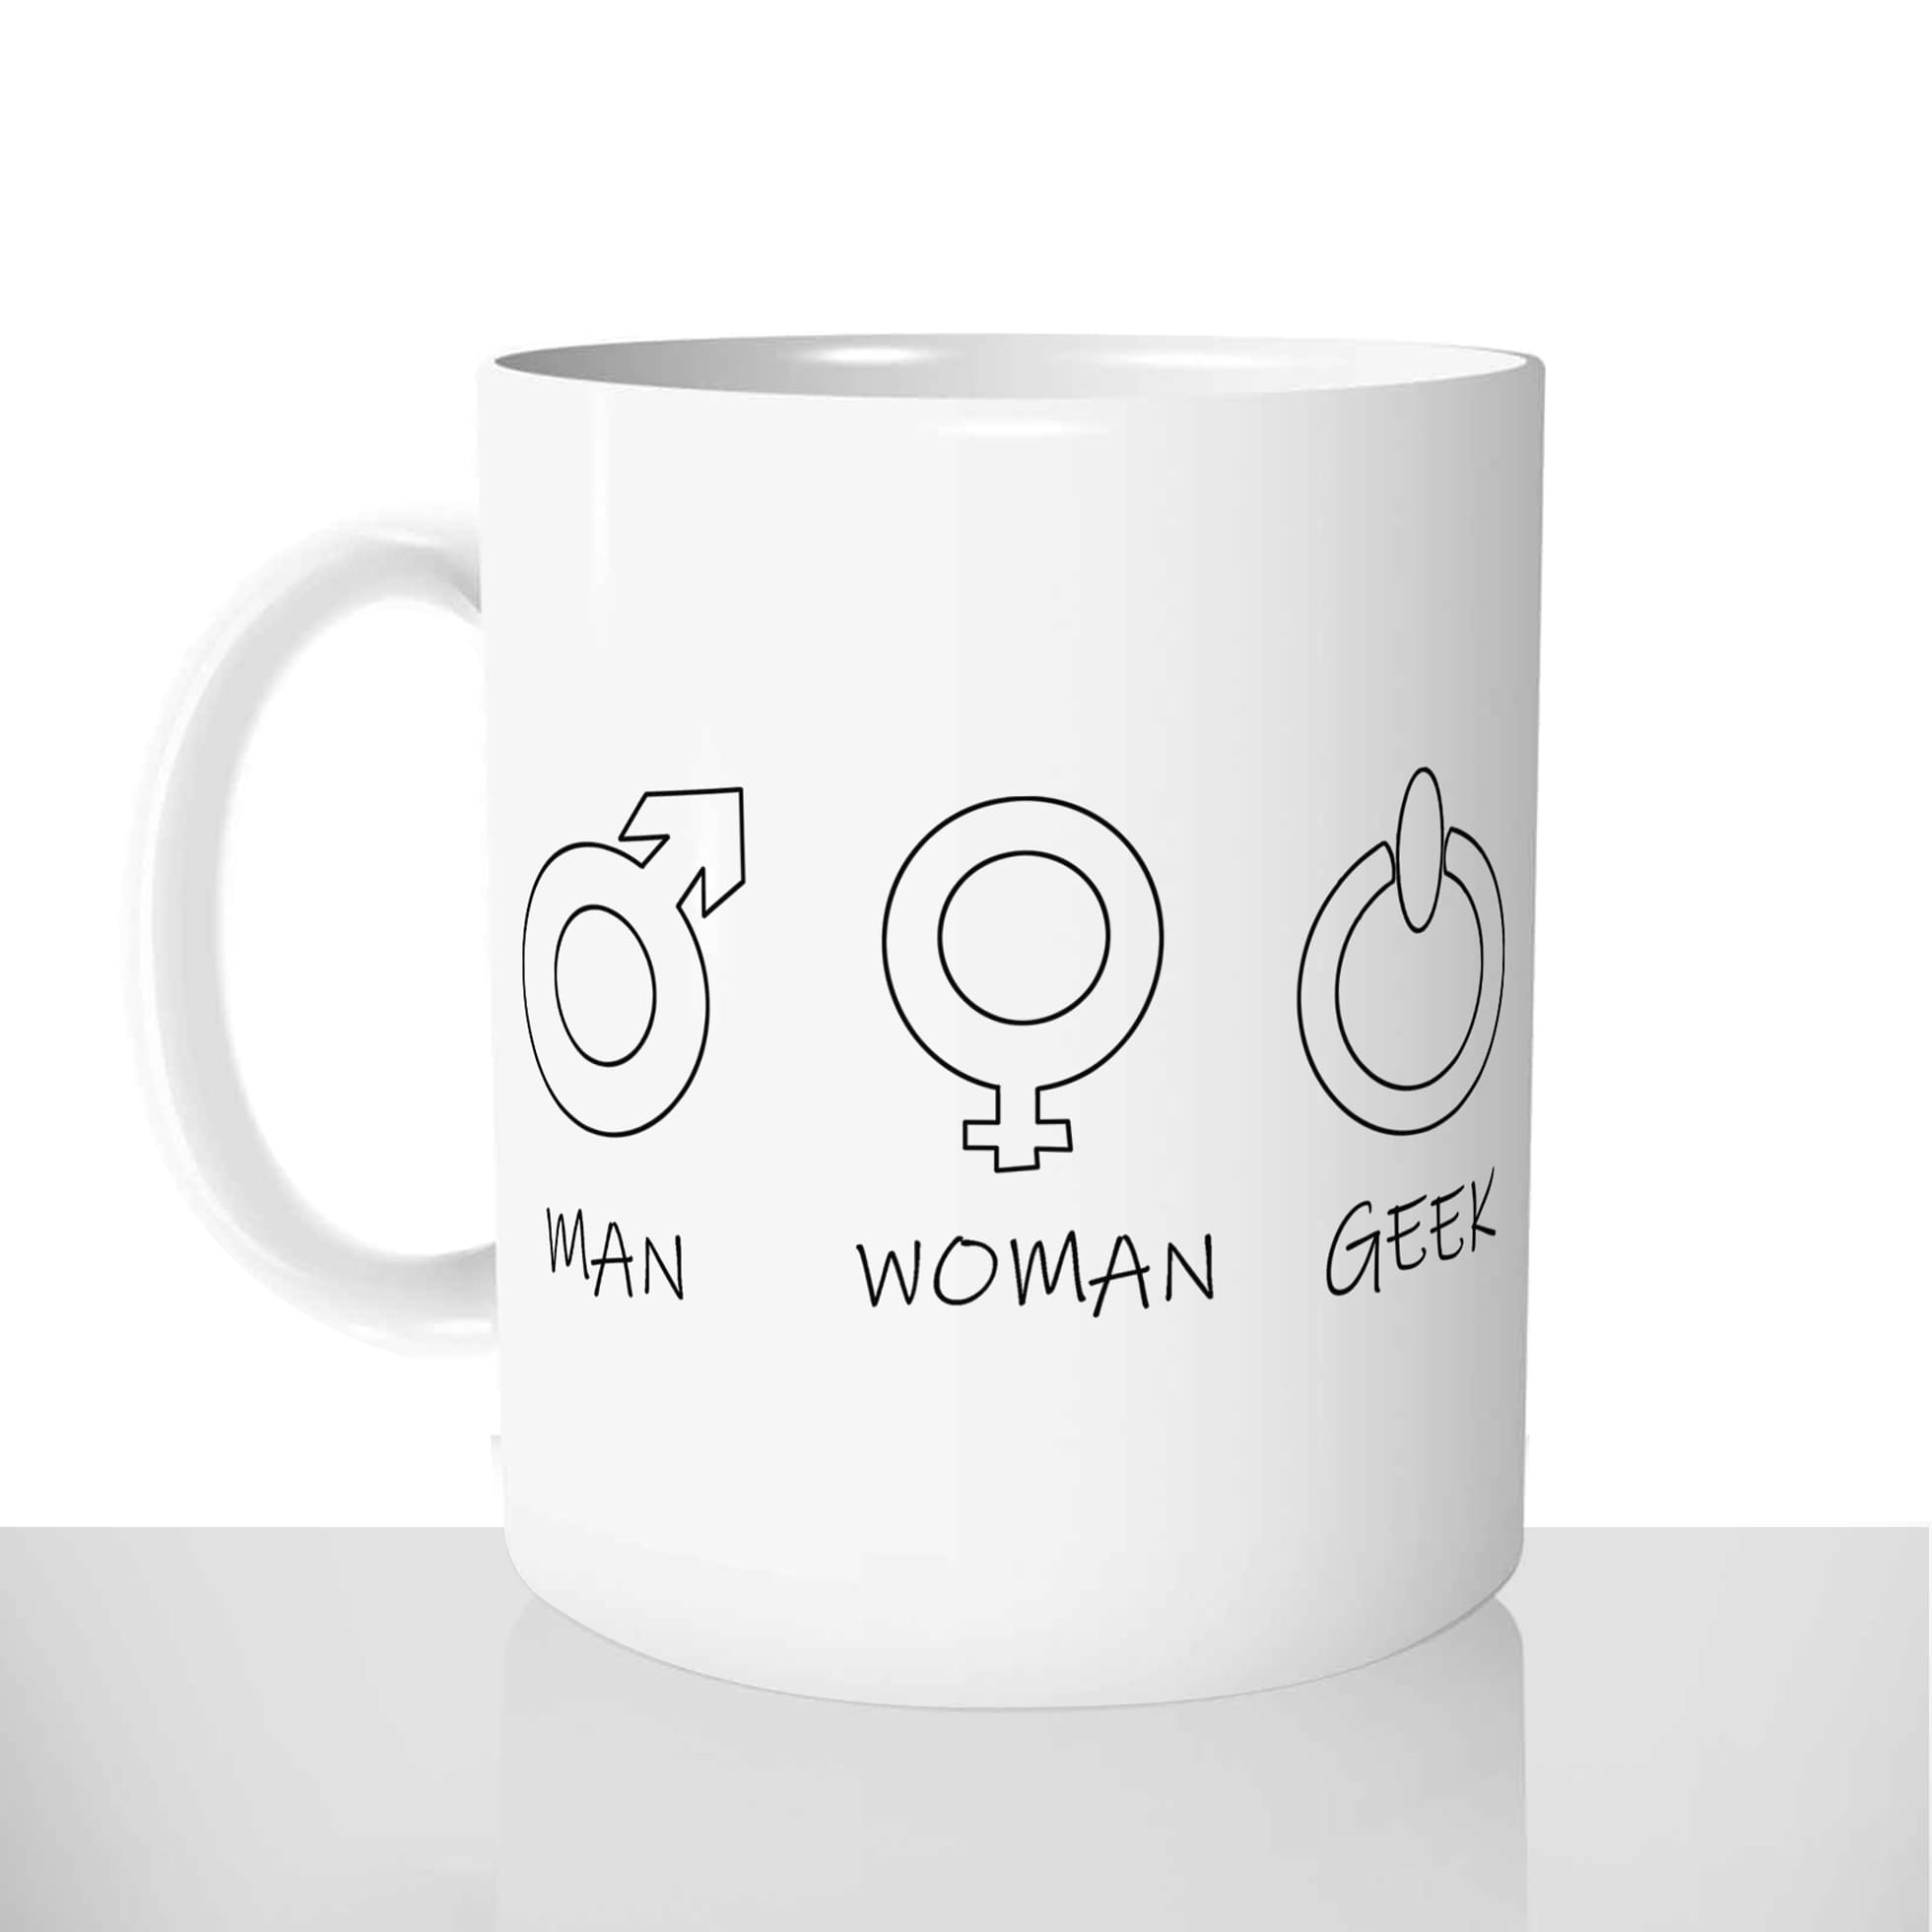 mug classique en céramique 11oz personnalisé personnalisation photo geek man woman genre sexe personnalisable offrir